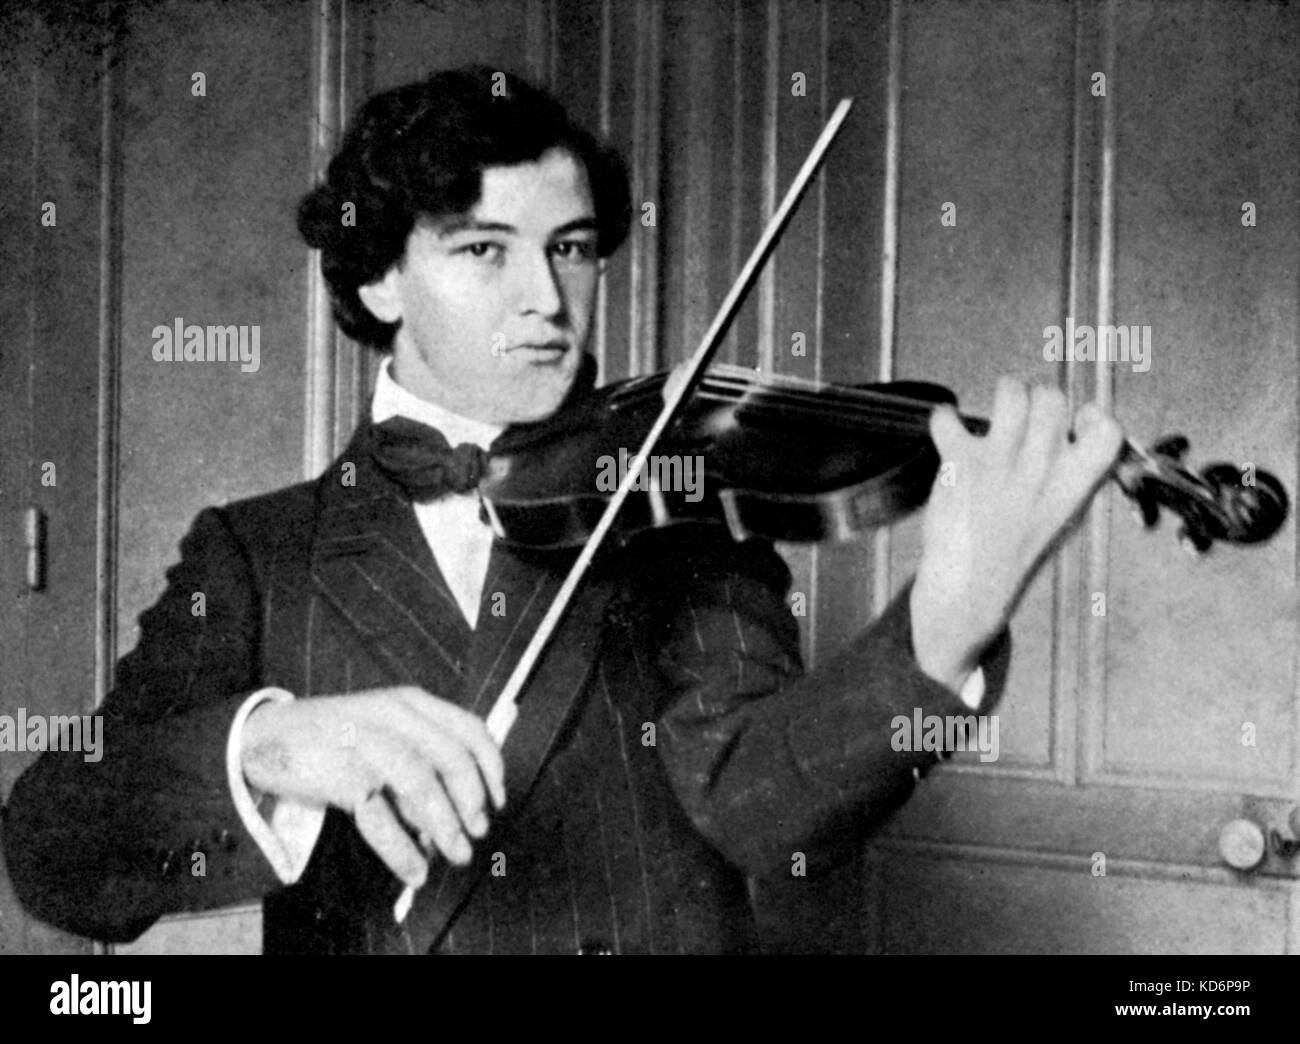 Arthur Honegger - retrato del francés nació el compositor suizo como un hombre joven jugando un violín, Le Havre, Francia, 1909-1910. 10 de marzo de 1892 - 27 de noviembre de 1955. Foto de stock